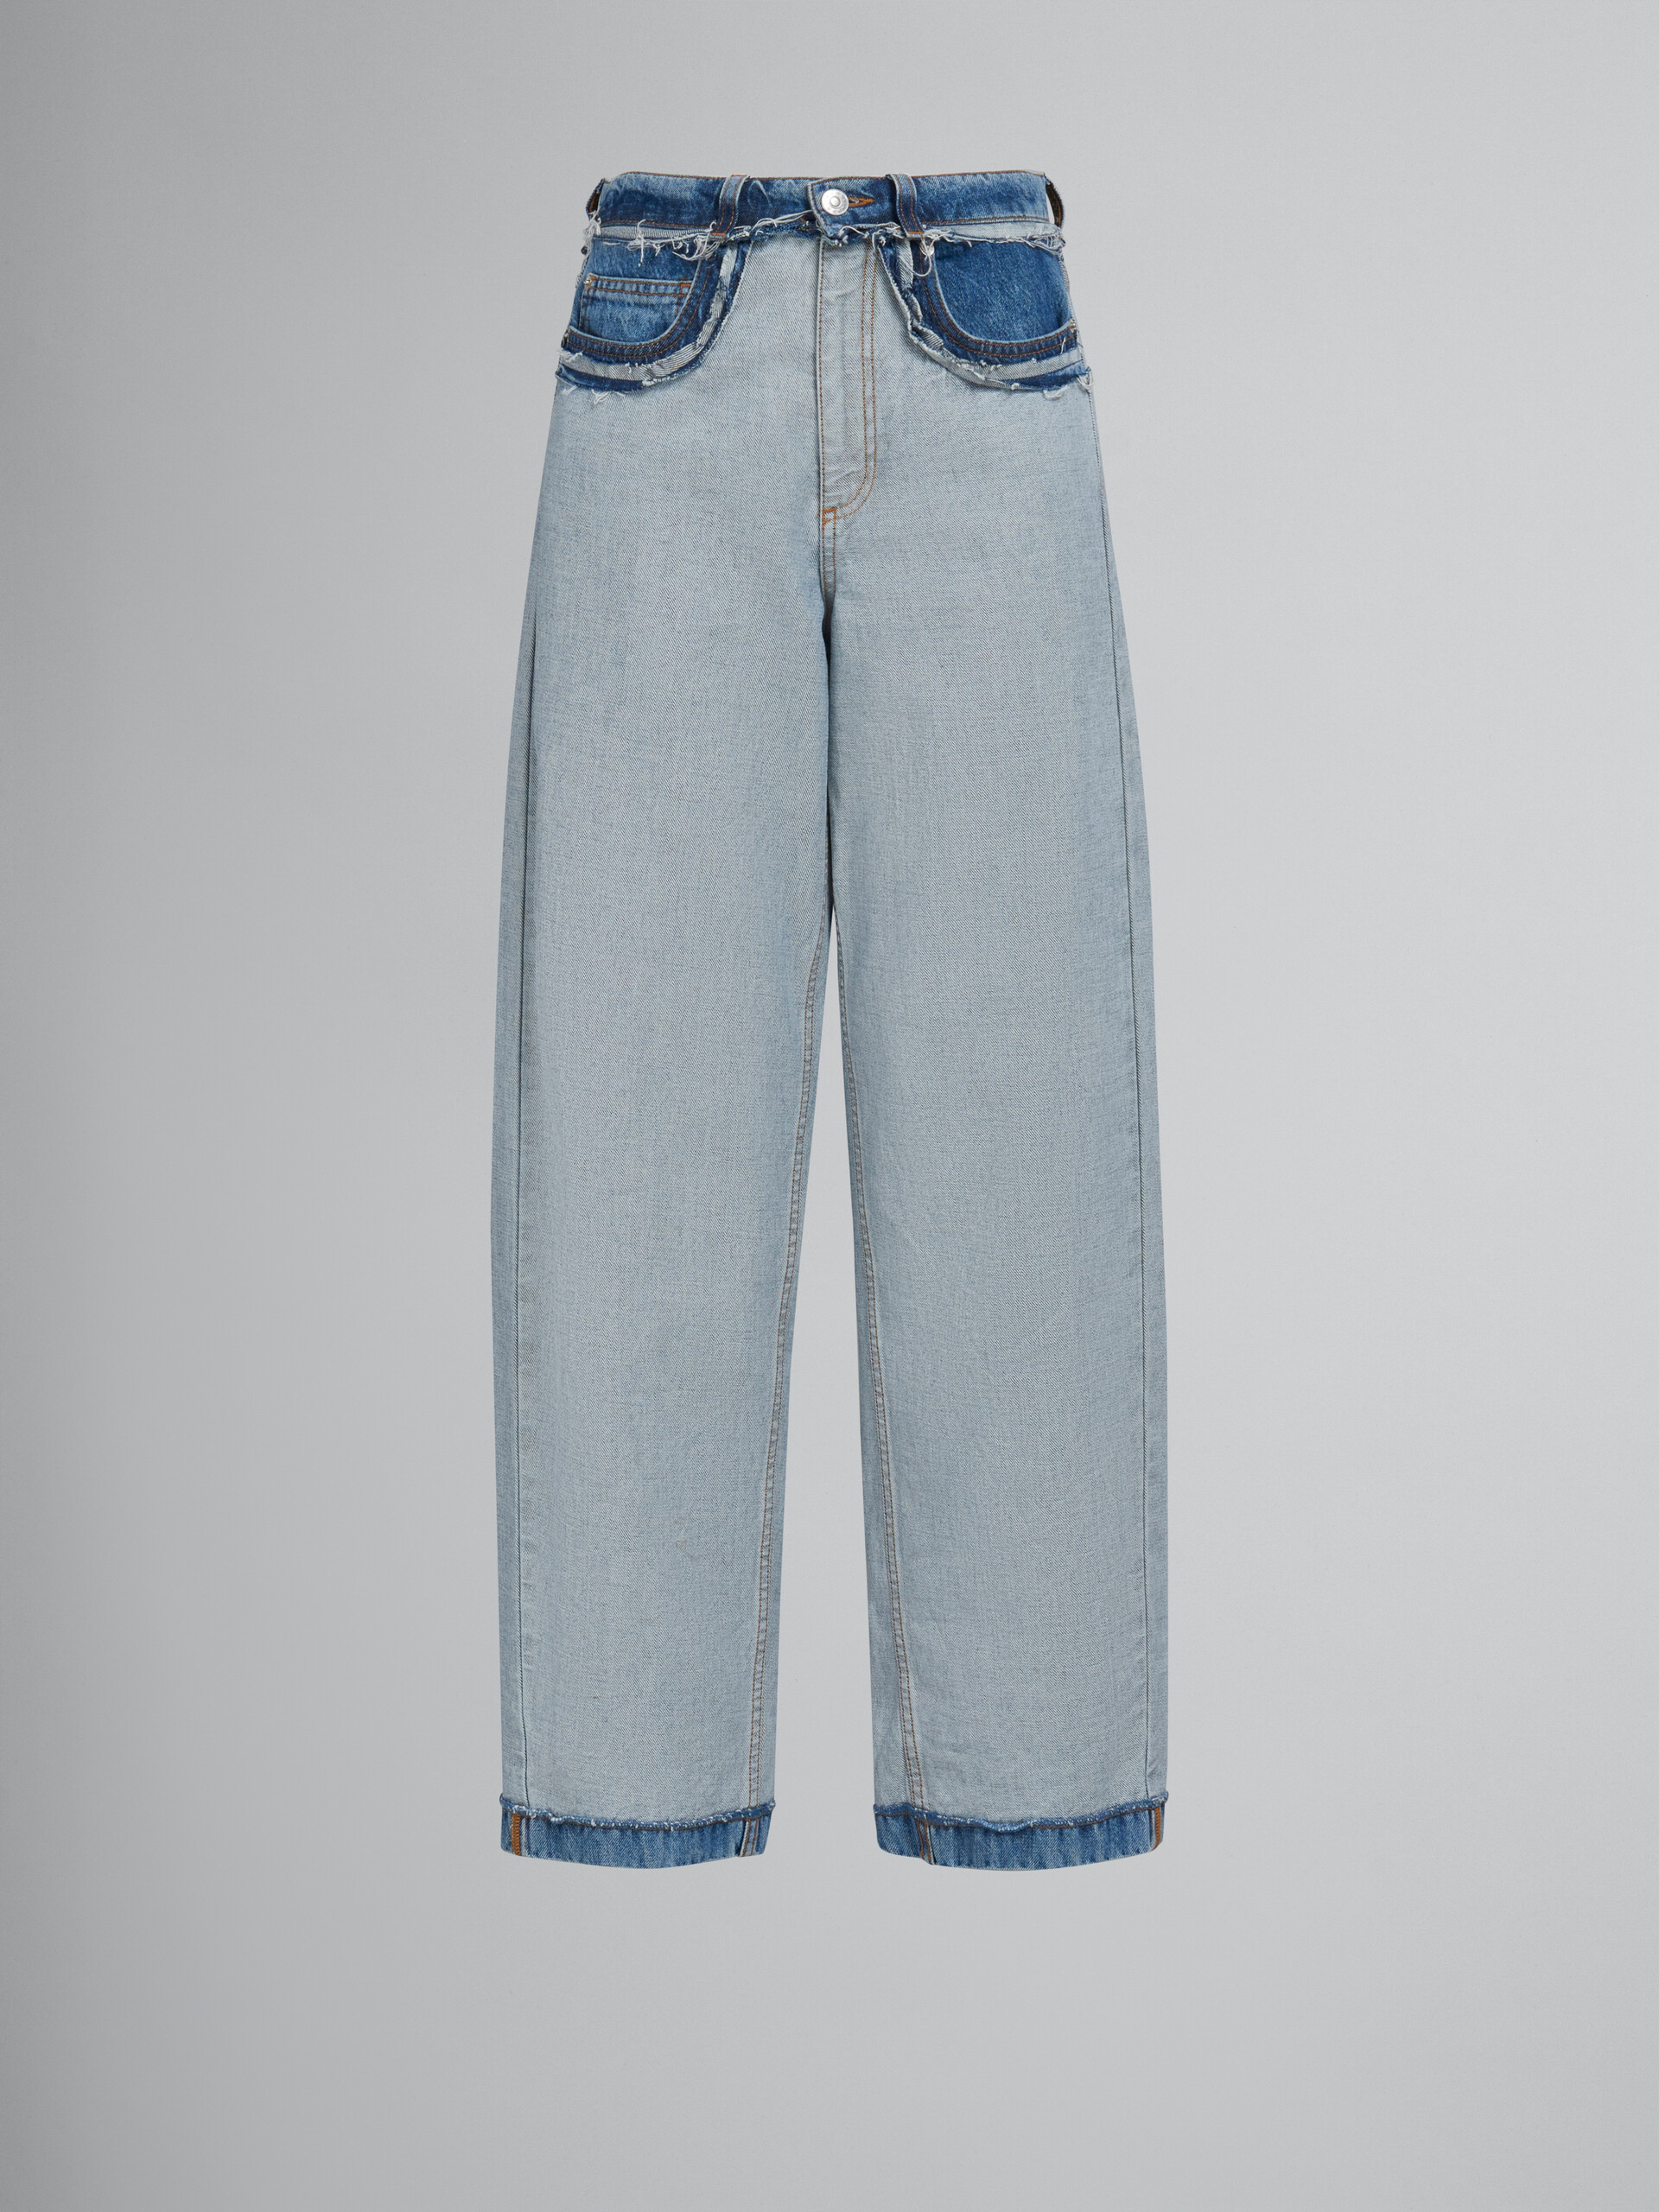 Blaue Denim-Jeans in Inside-Out-Optik und Karottenpassform - Hosen - Image 1